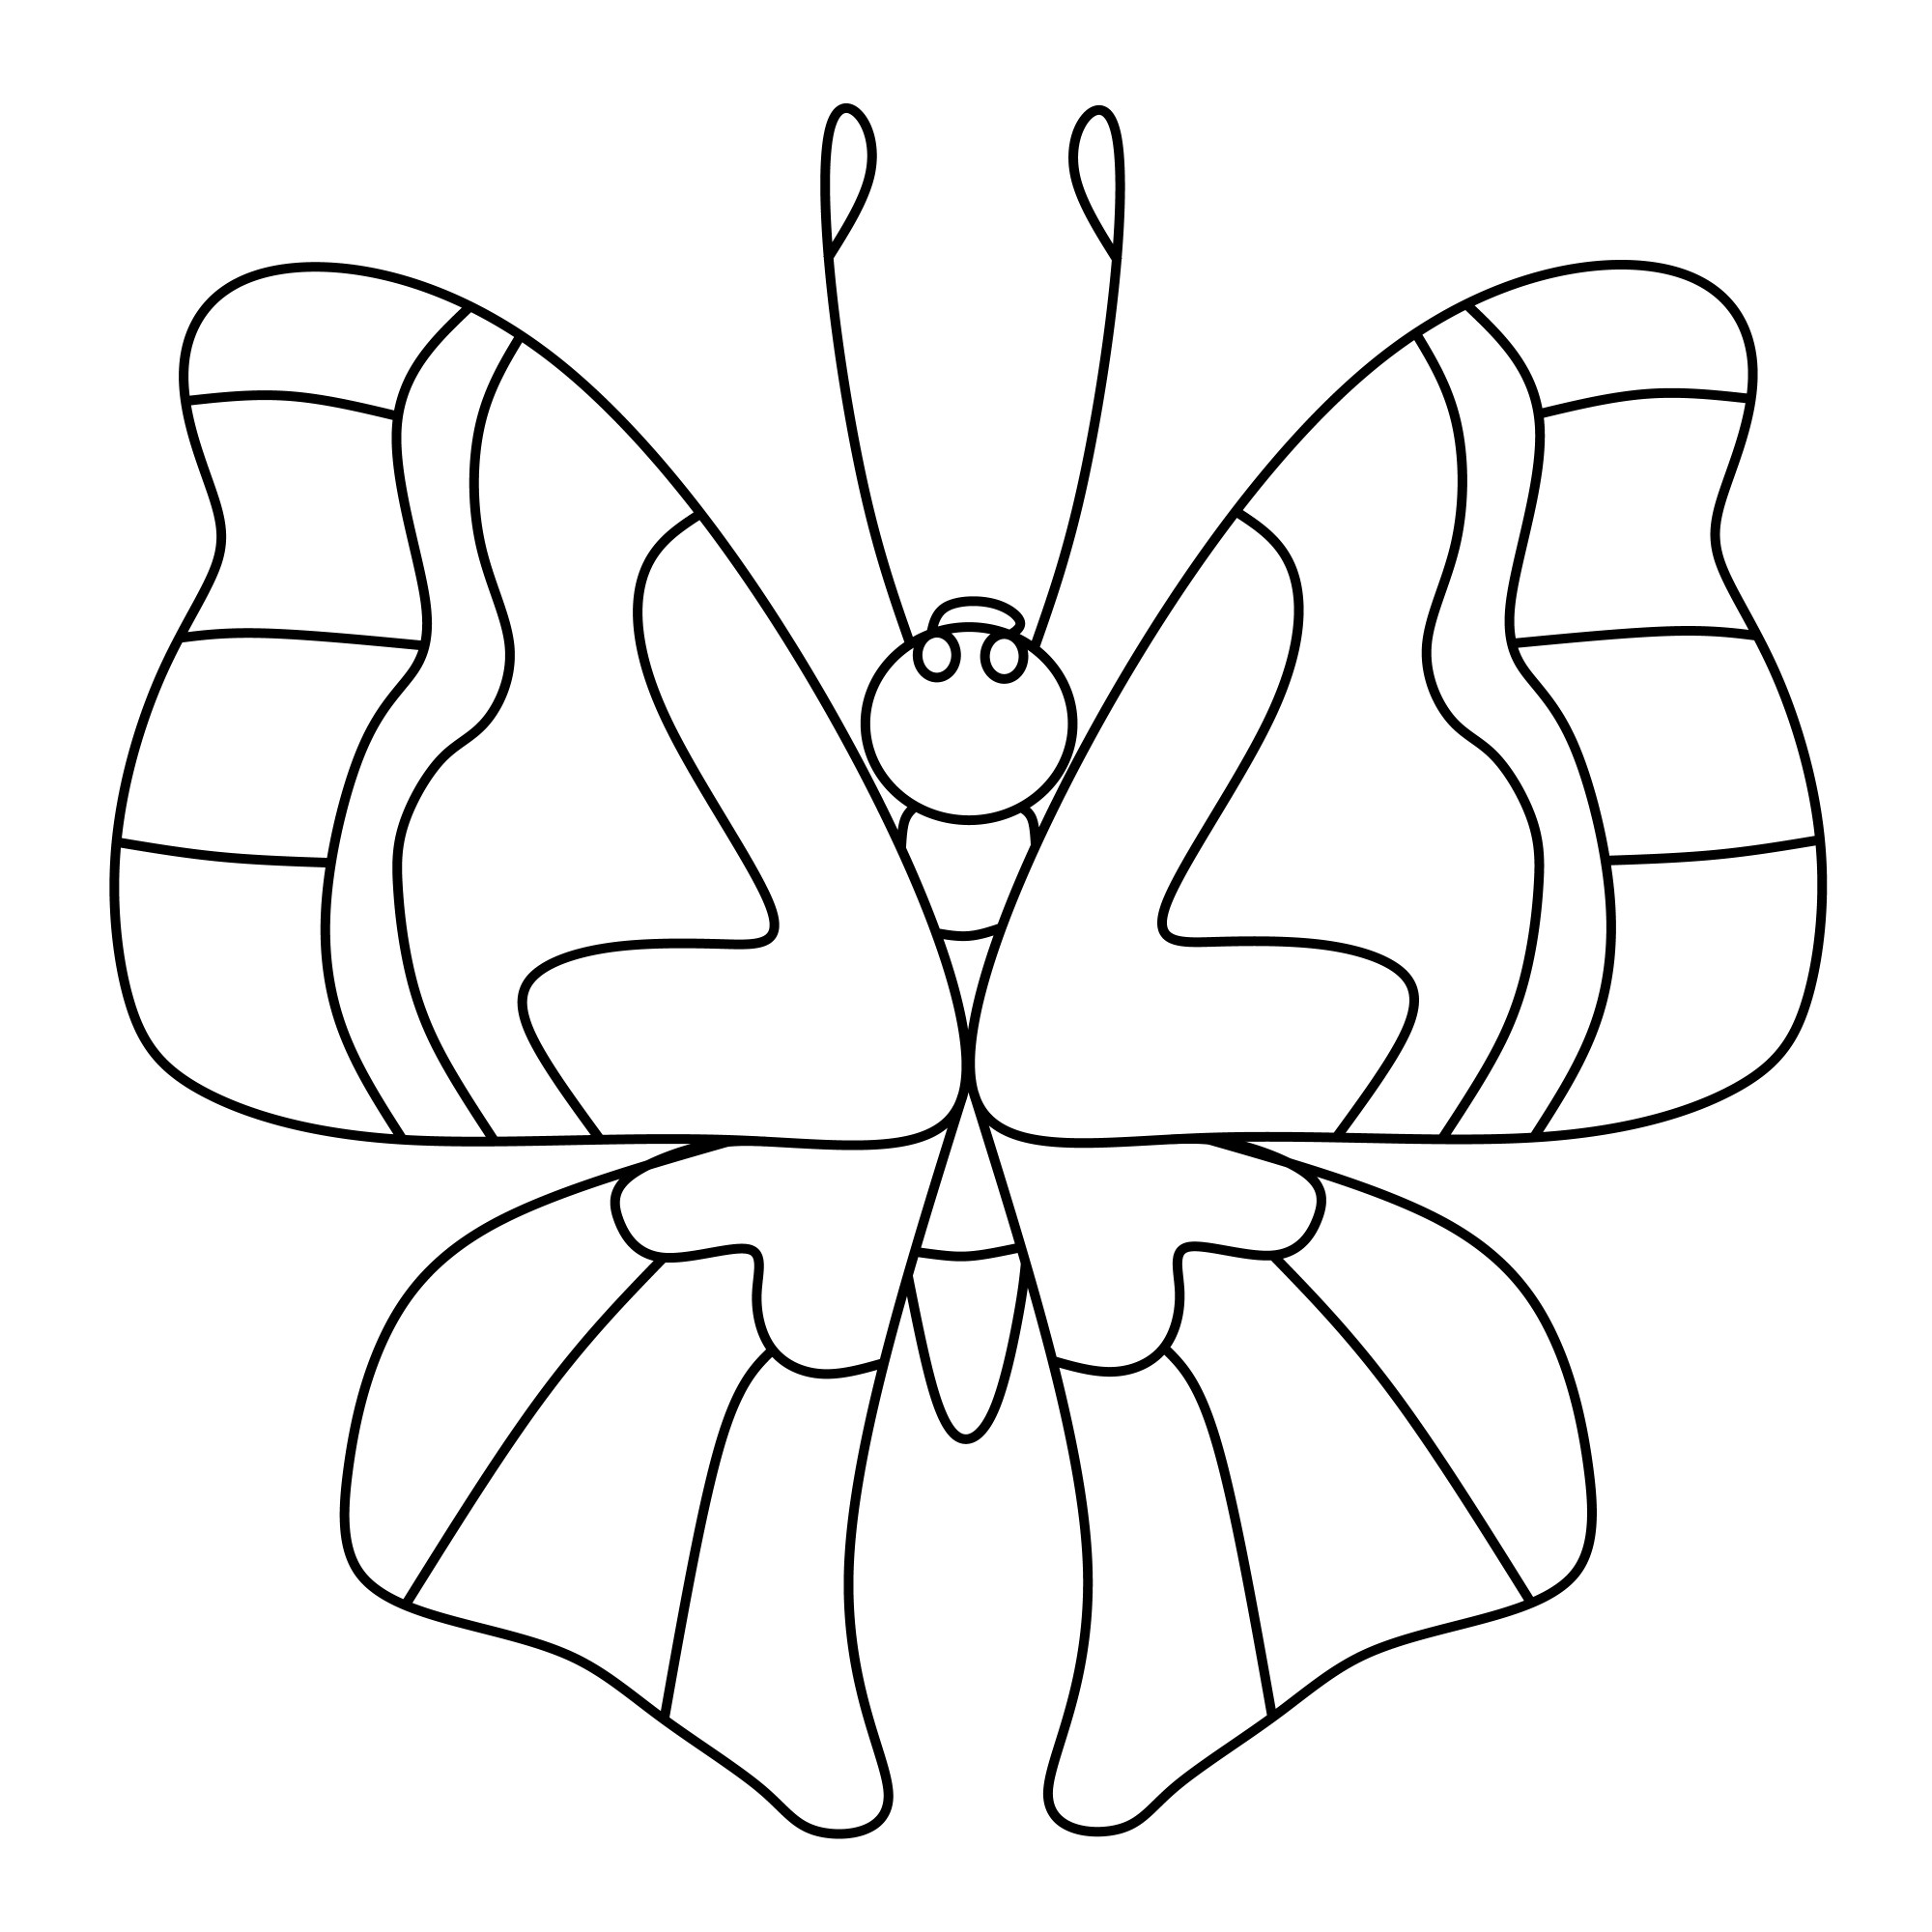 Раскраска для детей: легкая бабочка